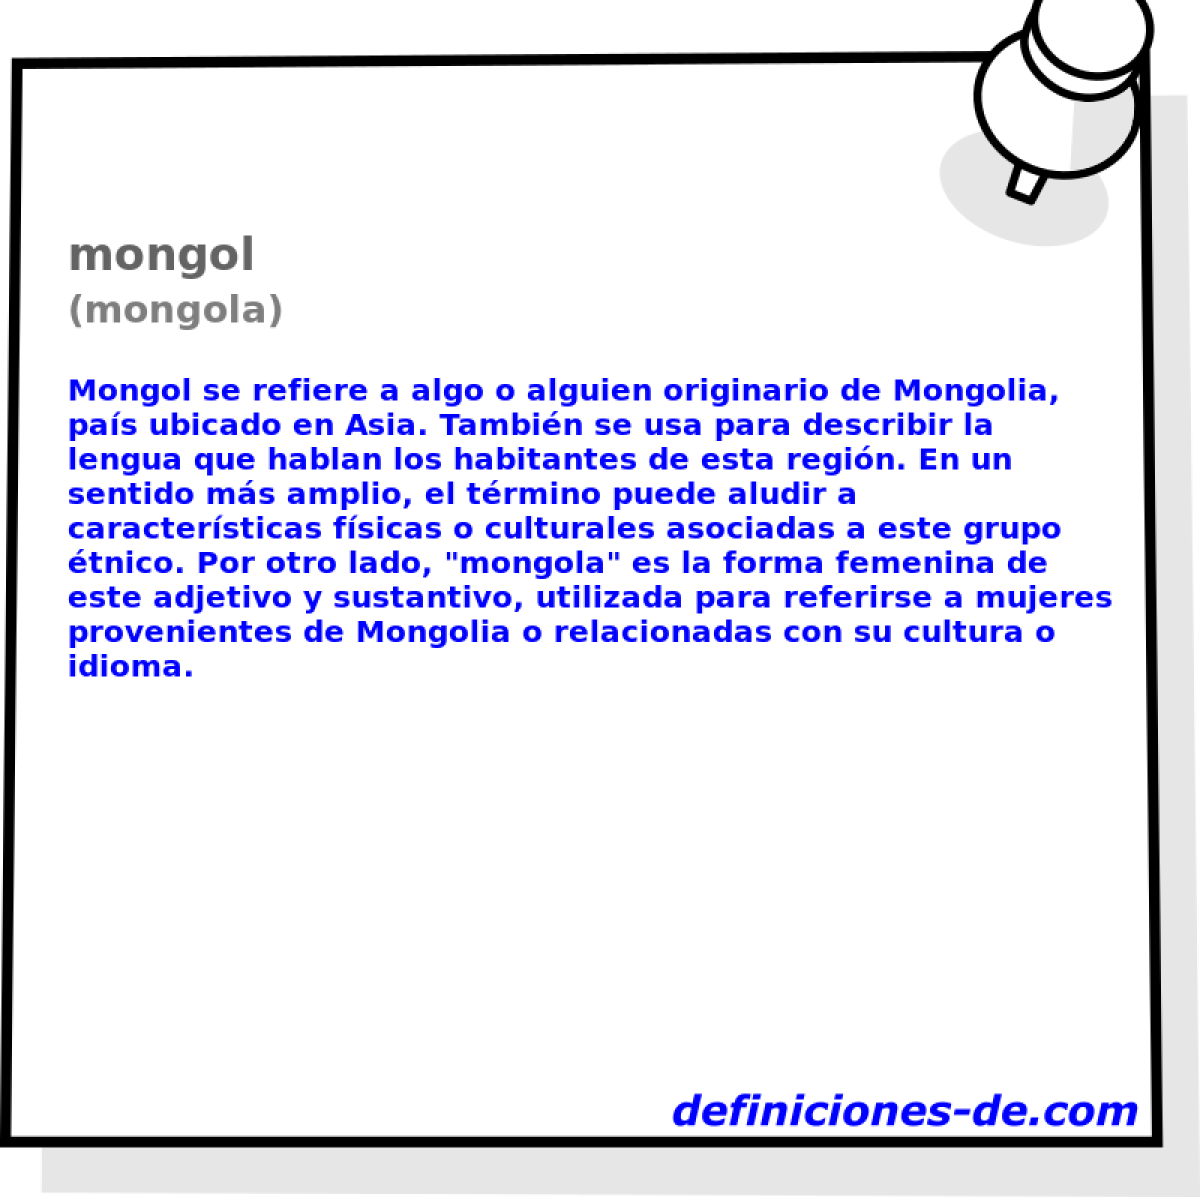 mongol (mongola)